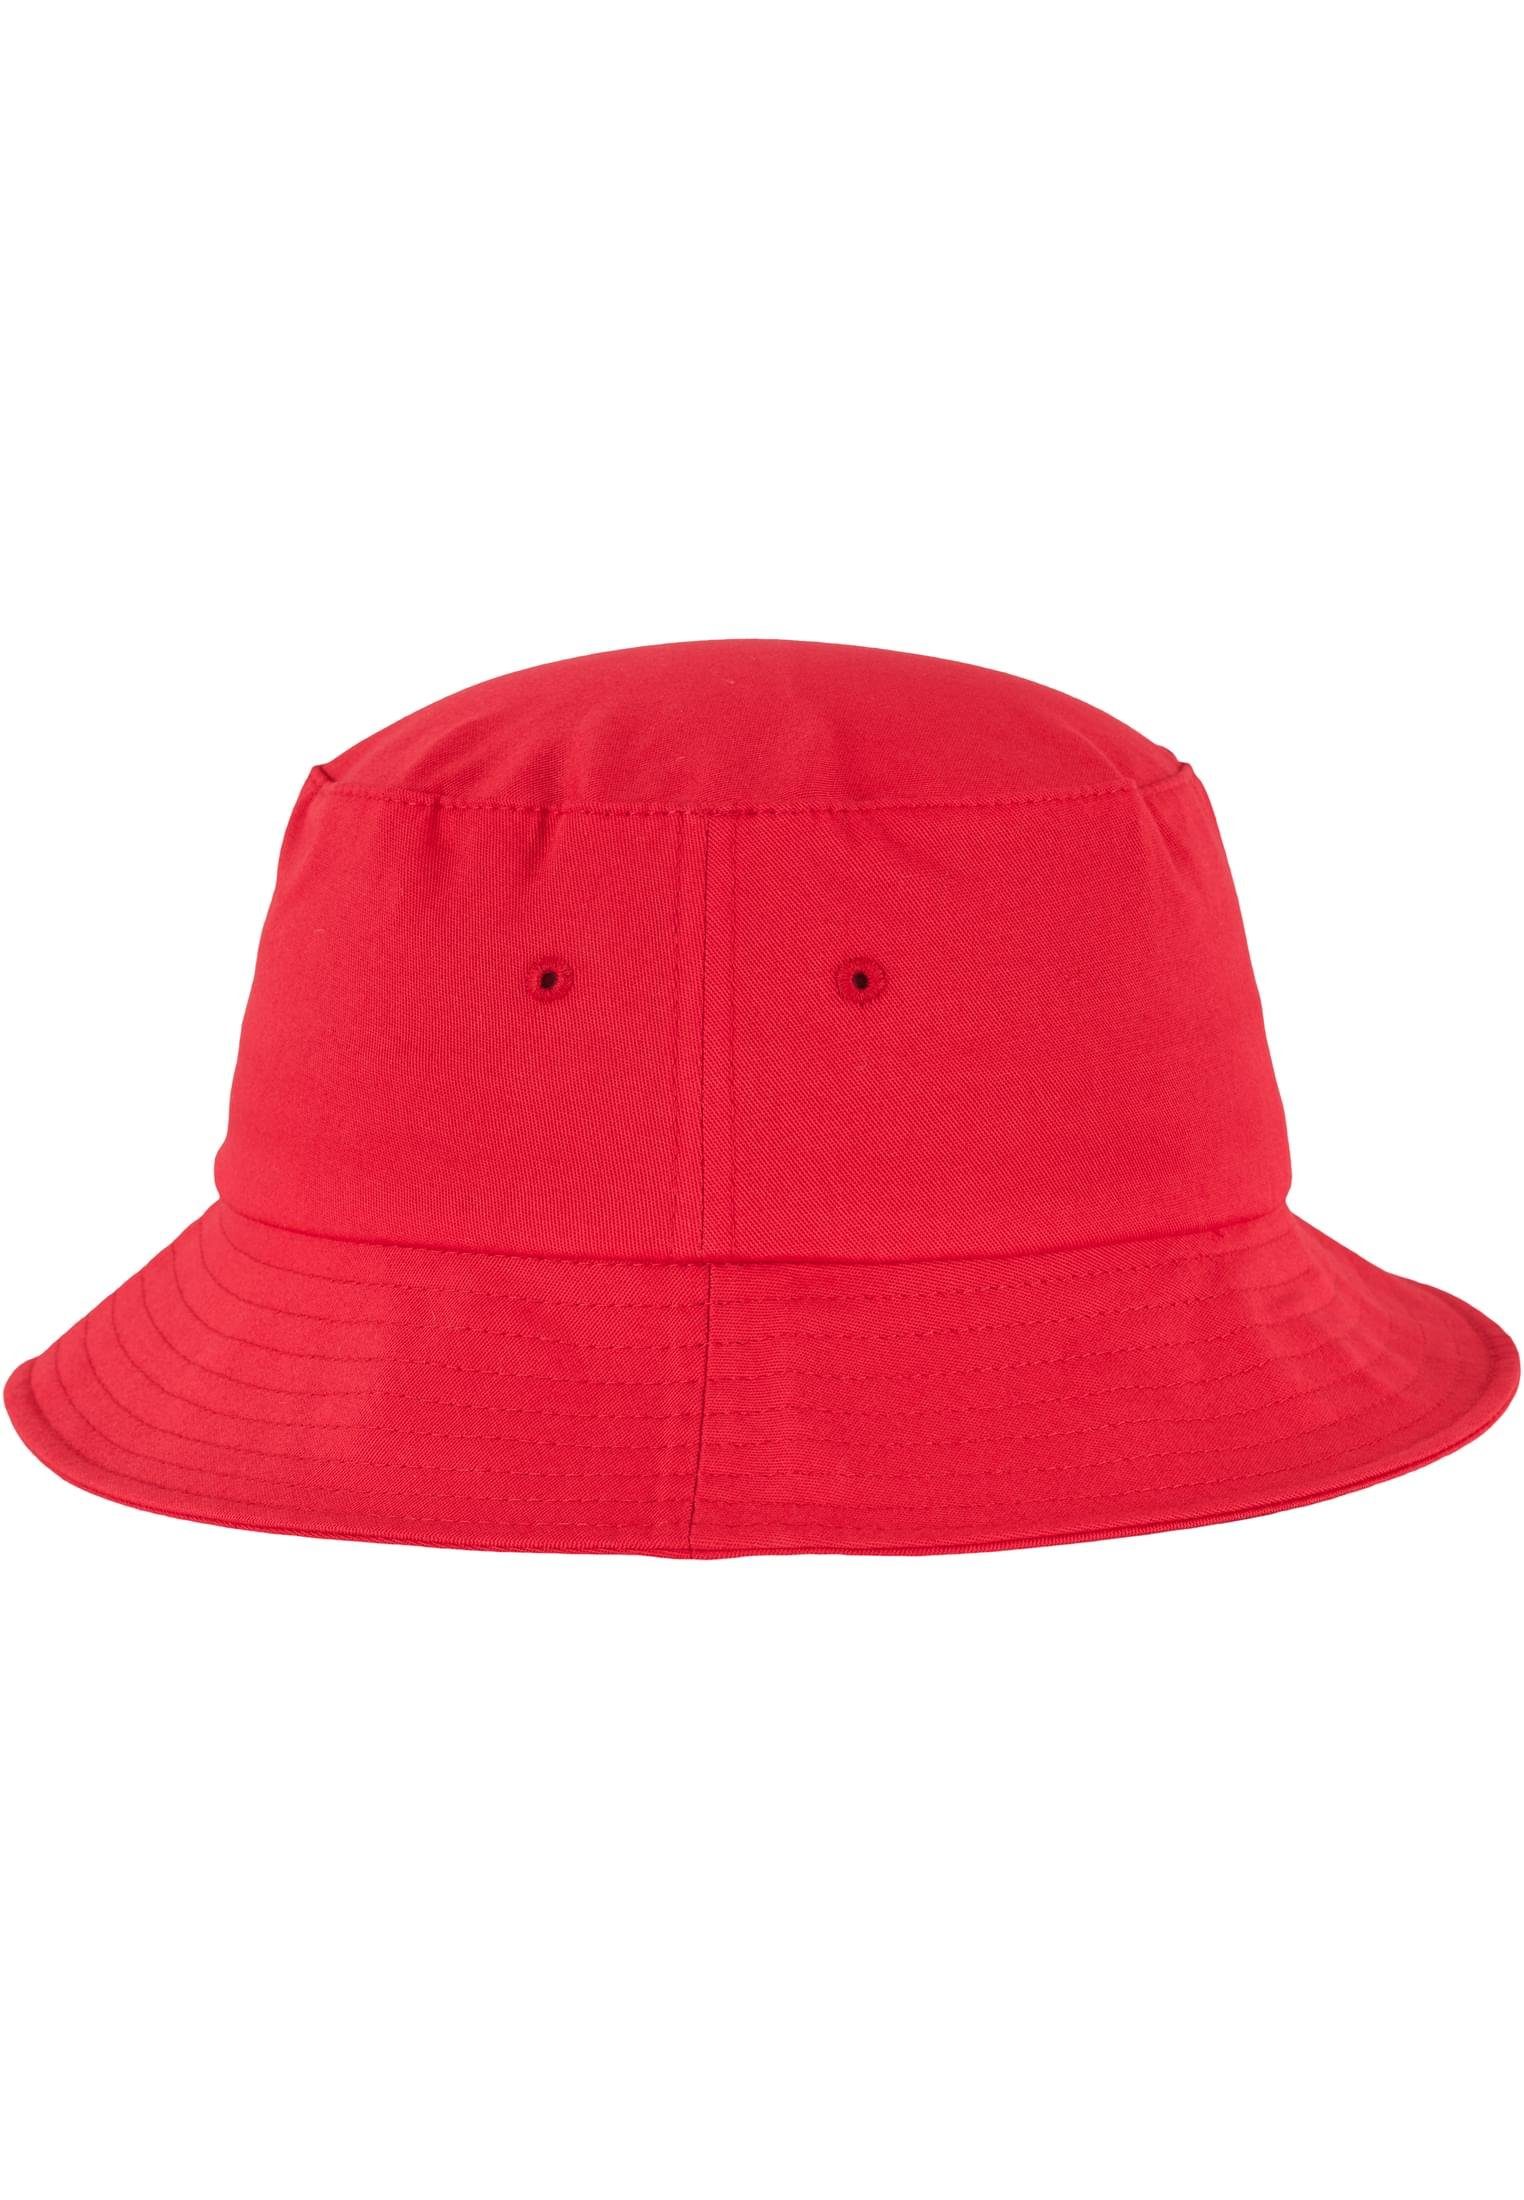 Flexfit Bucket Cotton Accessoires Flexfit Hat Flex red Cap Twill